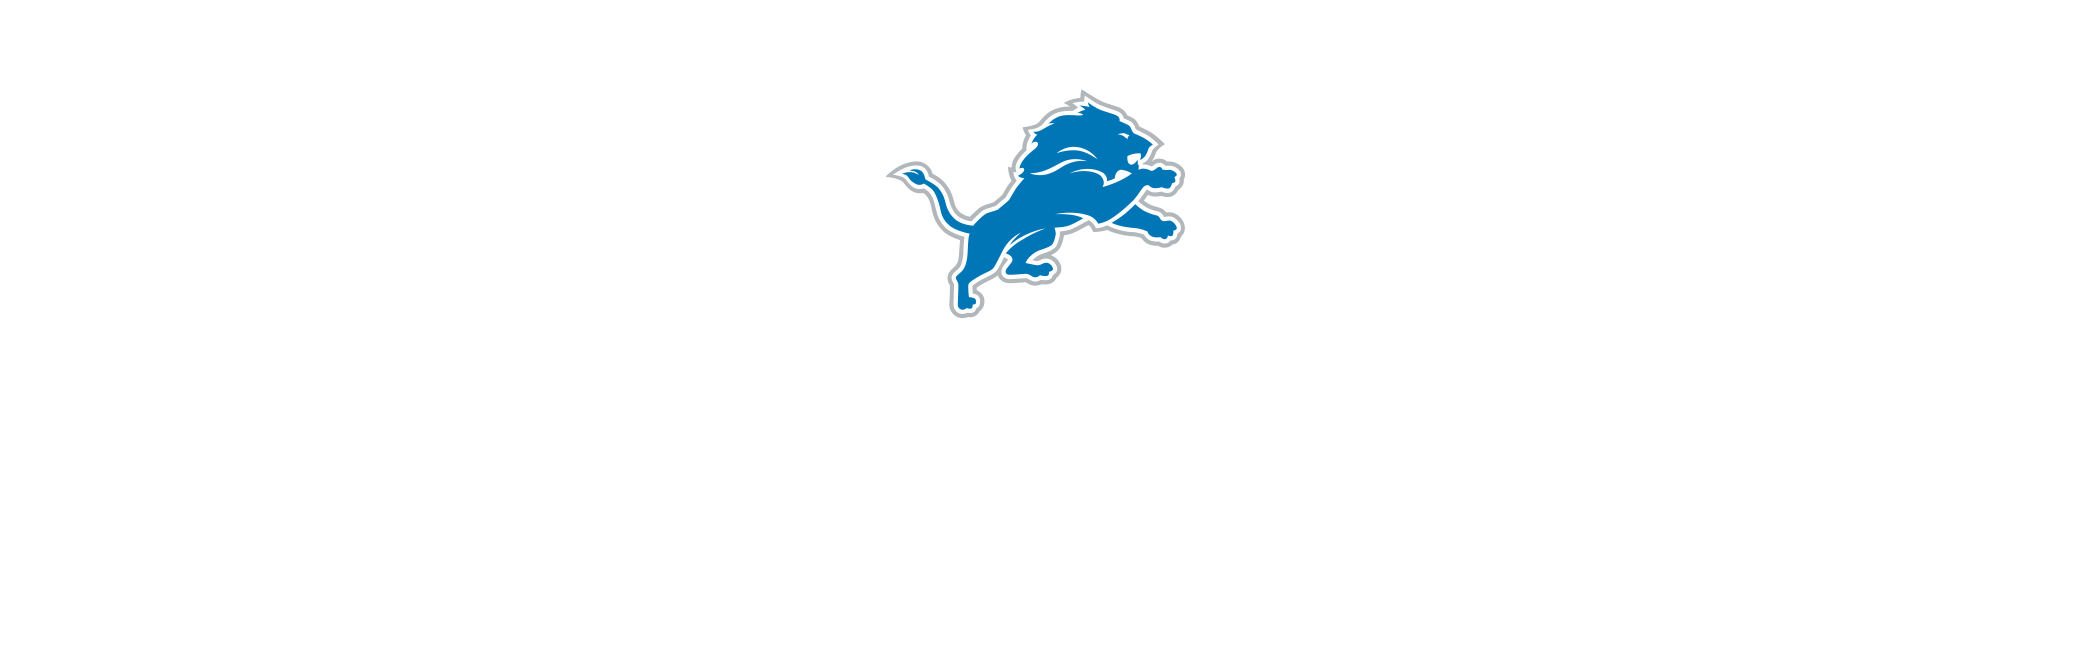 Shop Women's Detroit Lions NFL Merchandise & Apparel - Gameday Detroit